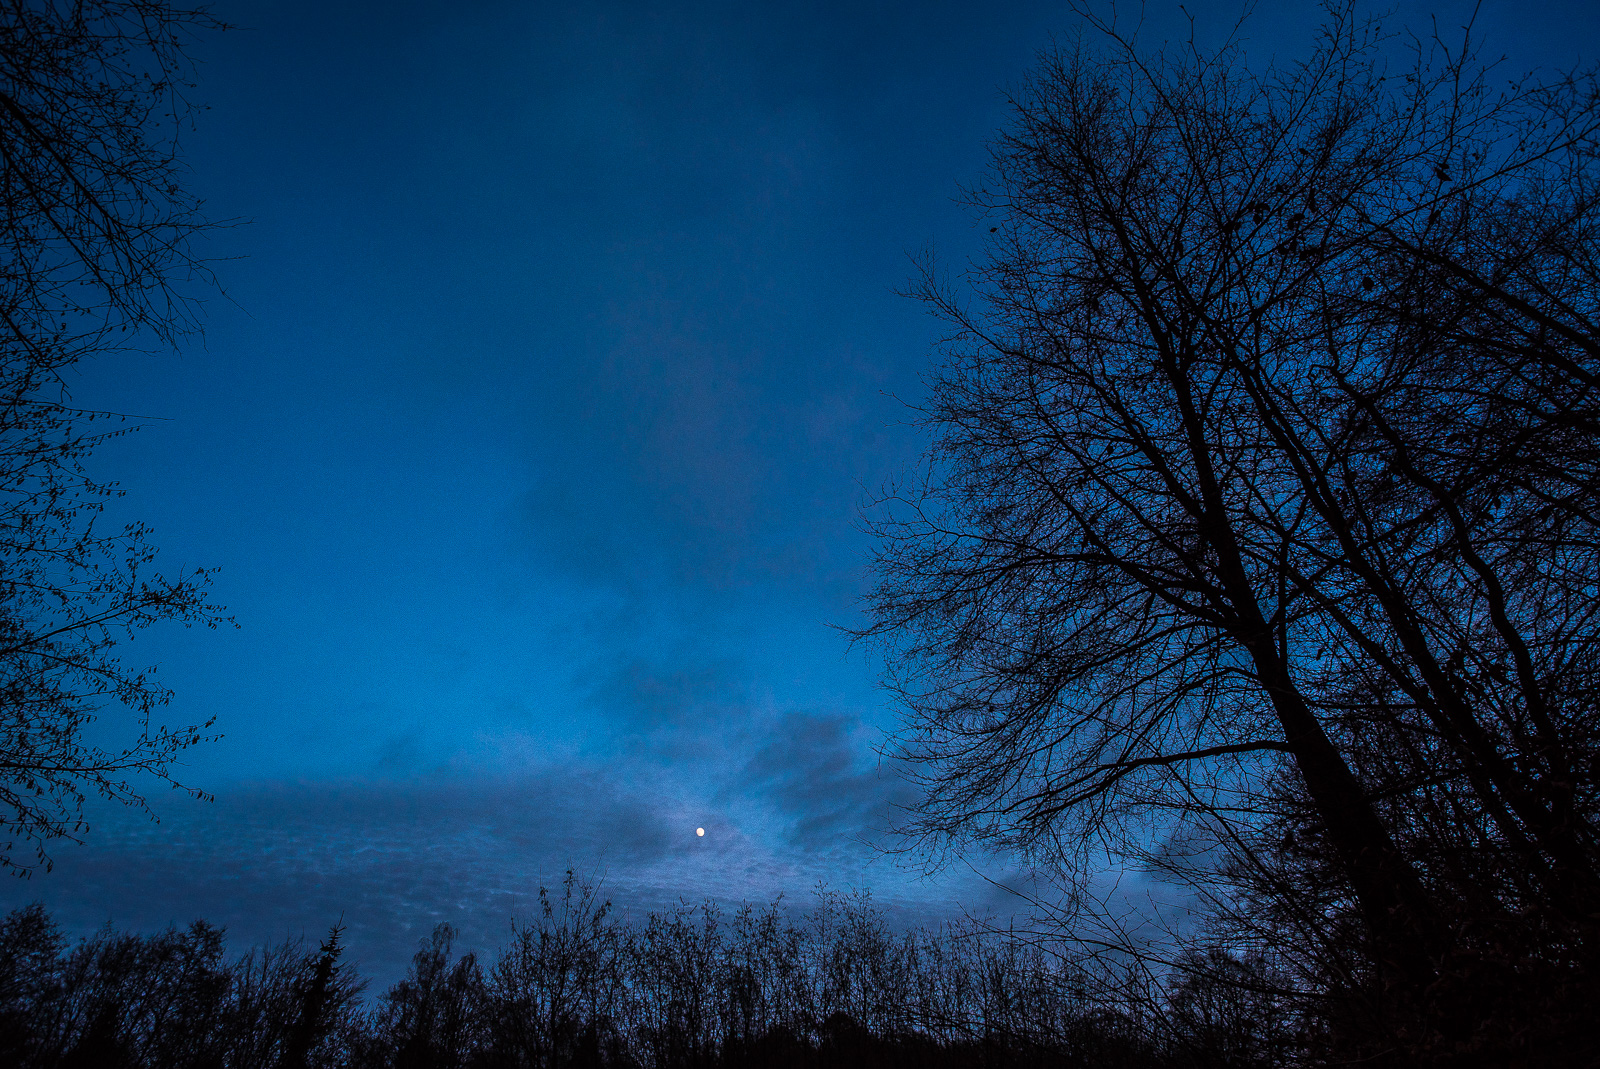 Weitwinkelaufnahme mit Bäumen und Abendhimmel, mittig unten über den Bäumen der Mond